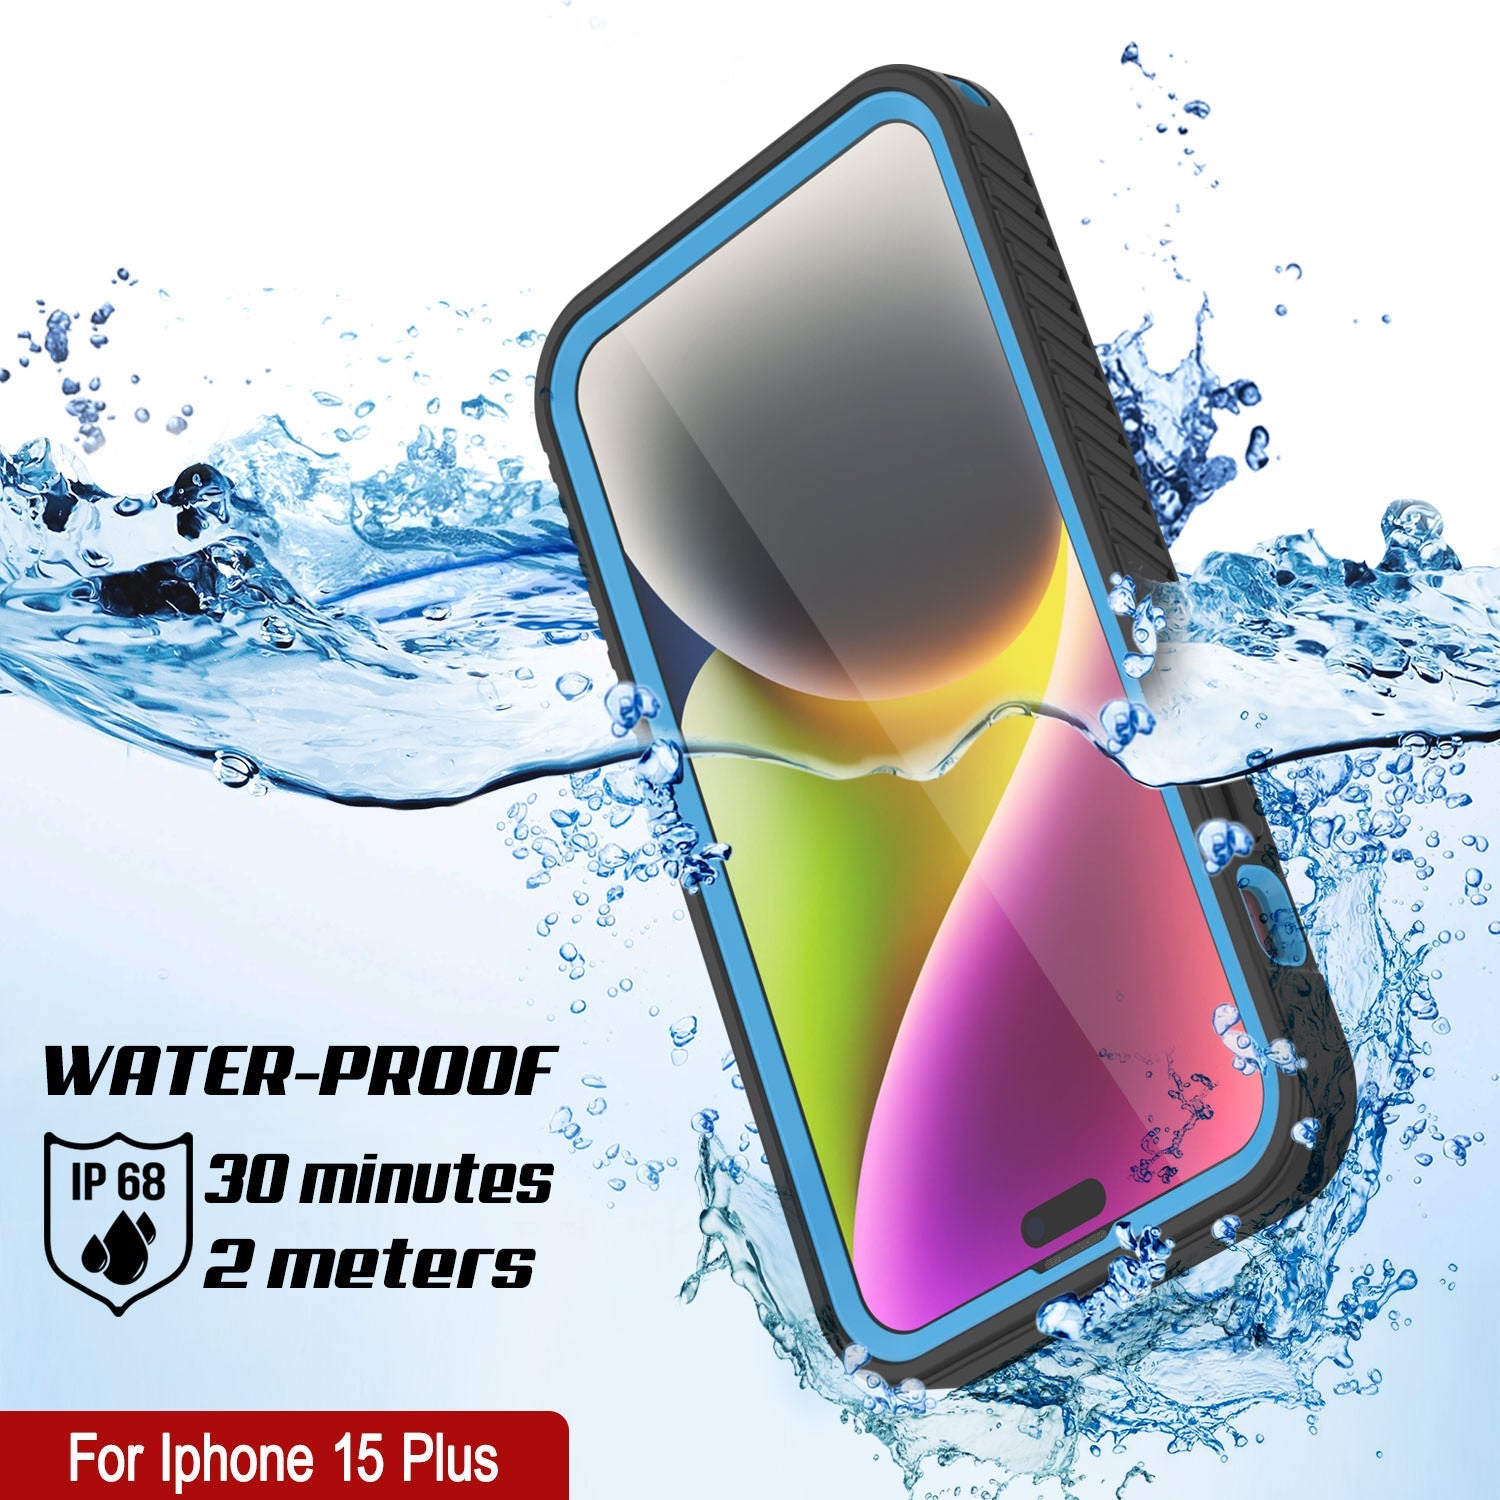 iPhone 15 Plus Waterproof IP68 Case, Punkcase [Light blue] [StudStar Series] [Slim Fit] [Dirtproof]